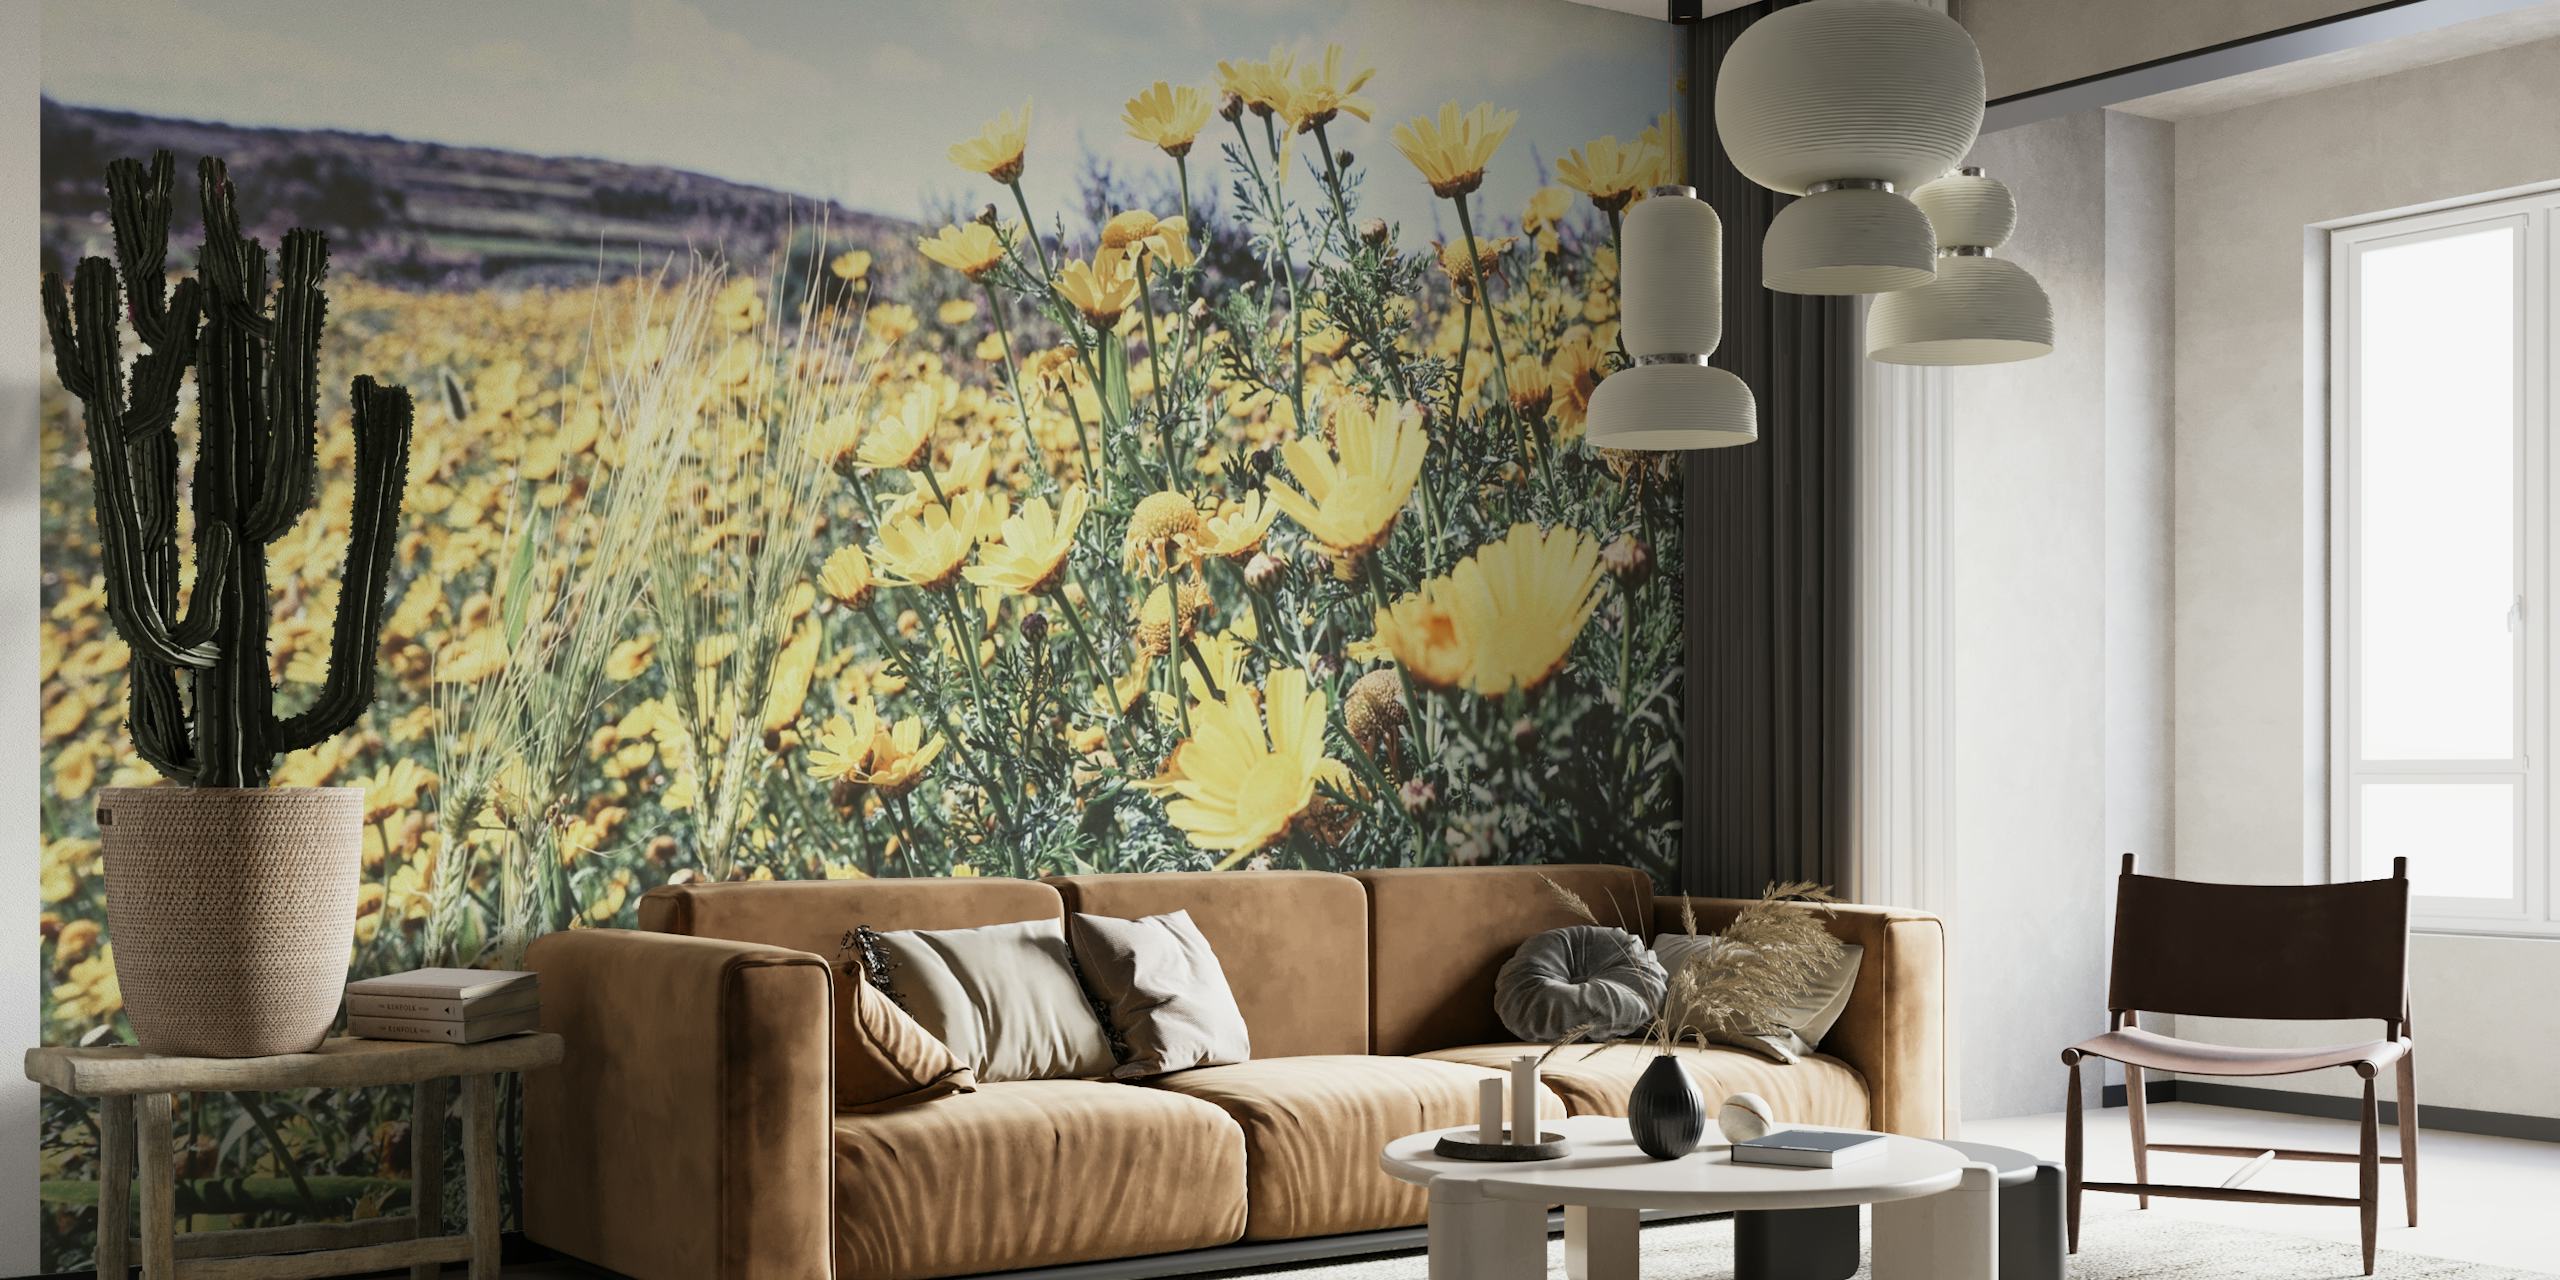 Pehmeä Flower Field -seinämaalaus keltaisilla luonnonkukilla ja aurinkoisella niityllä